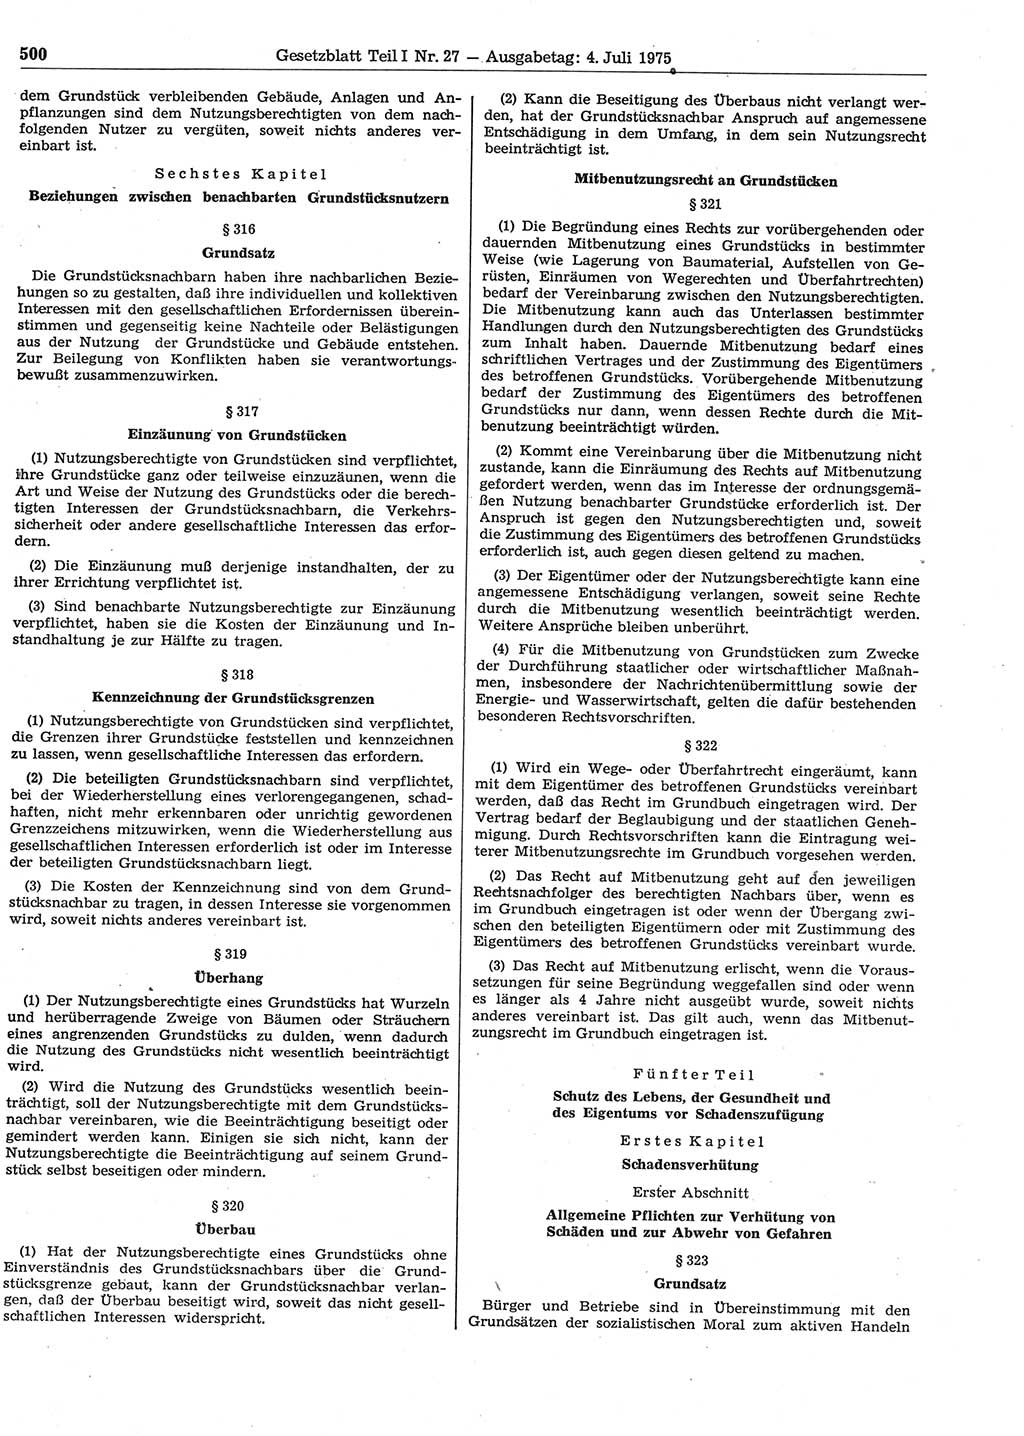 Gesetzblatt (GBl.) der Deutschen Demokratischen Republik (DDR) Teil Ⅰ 1975, Seite 500 (GBl. DDR Ⅰ 1975, S. 500)